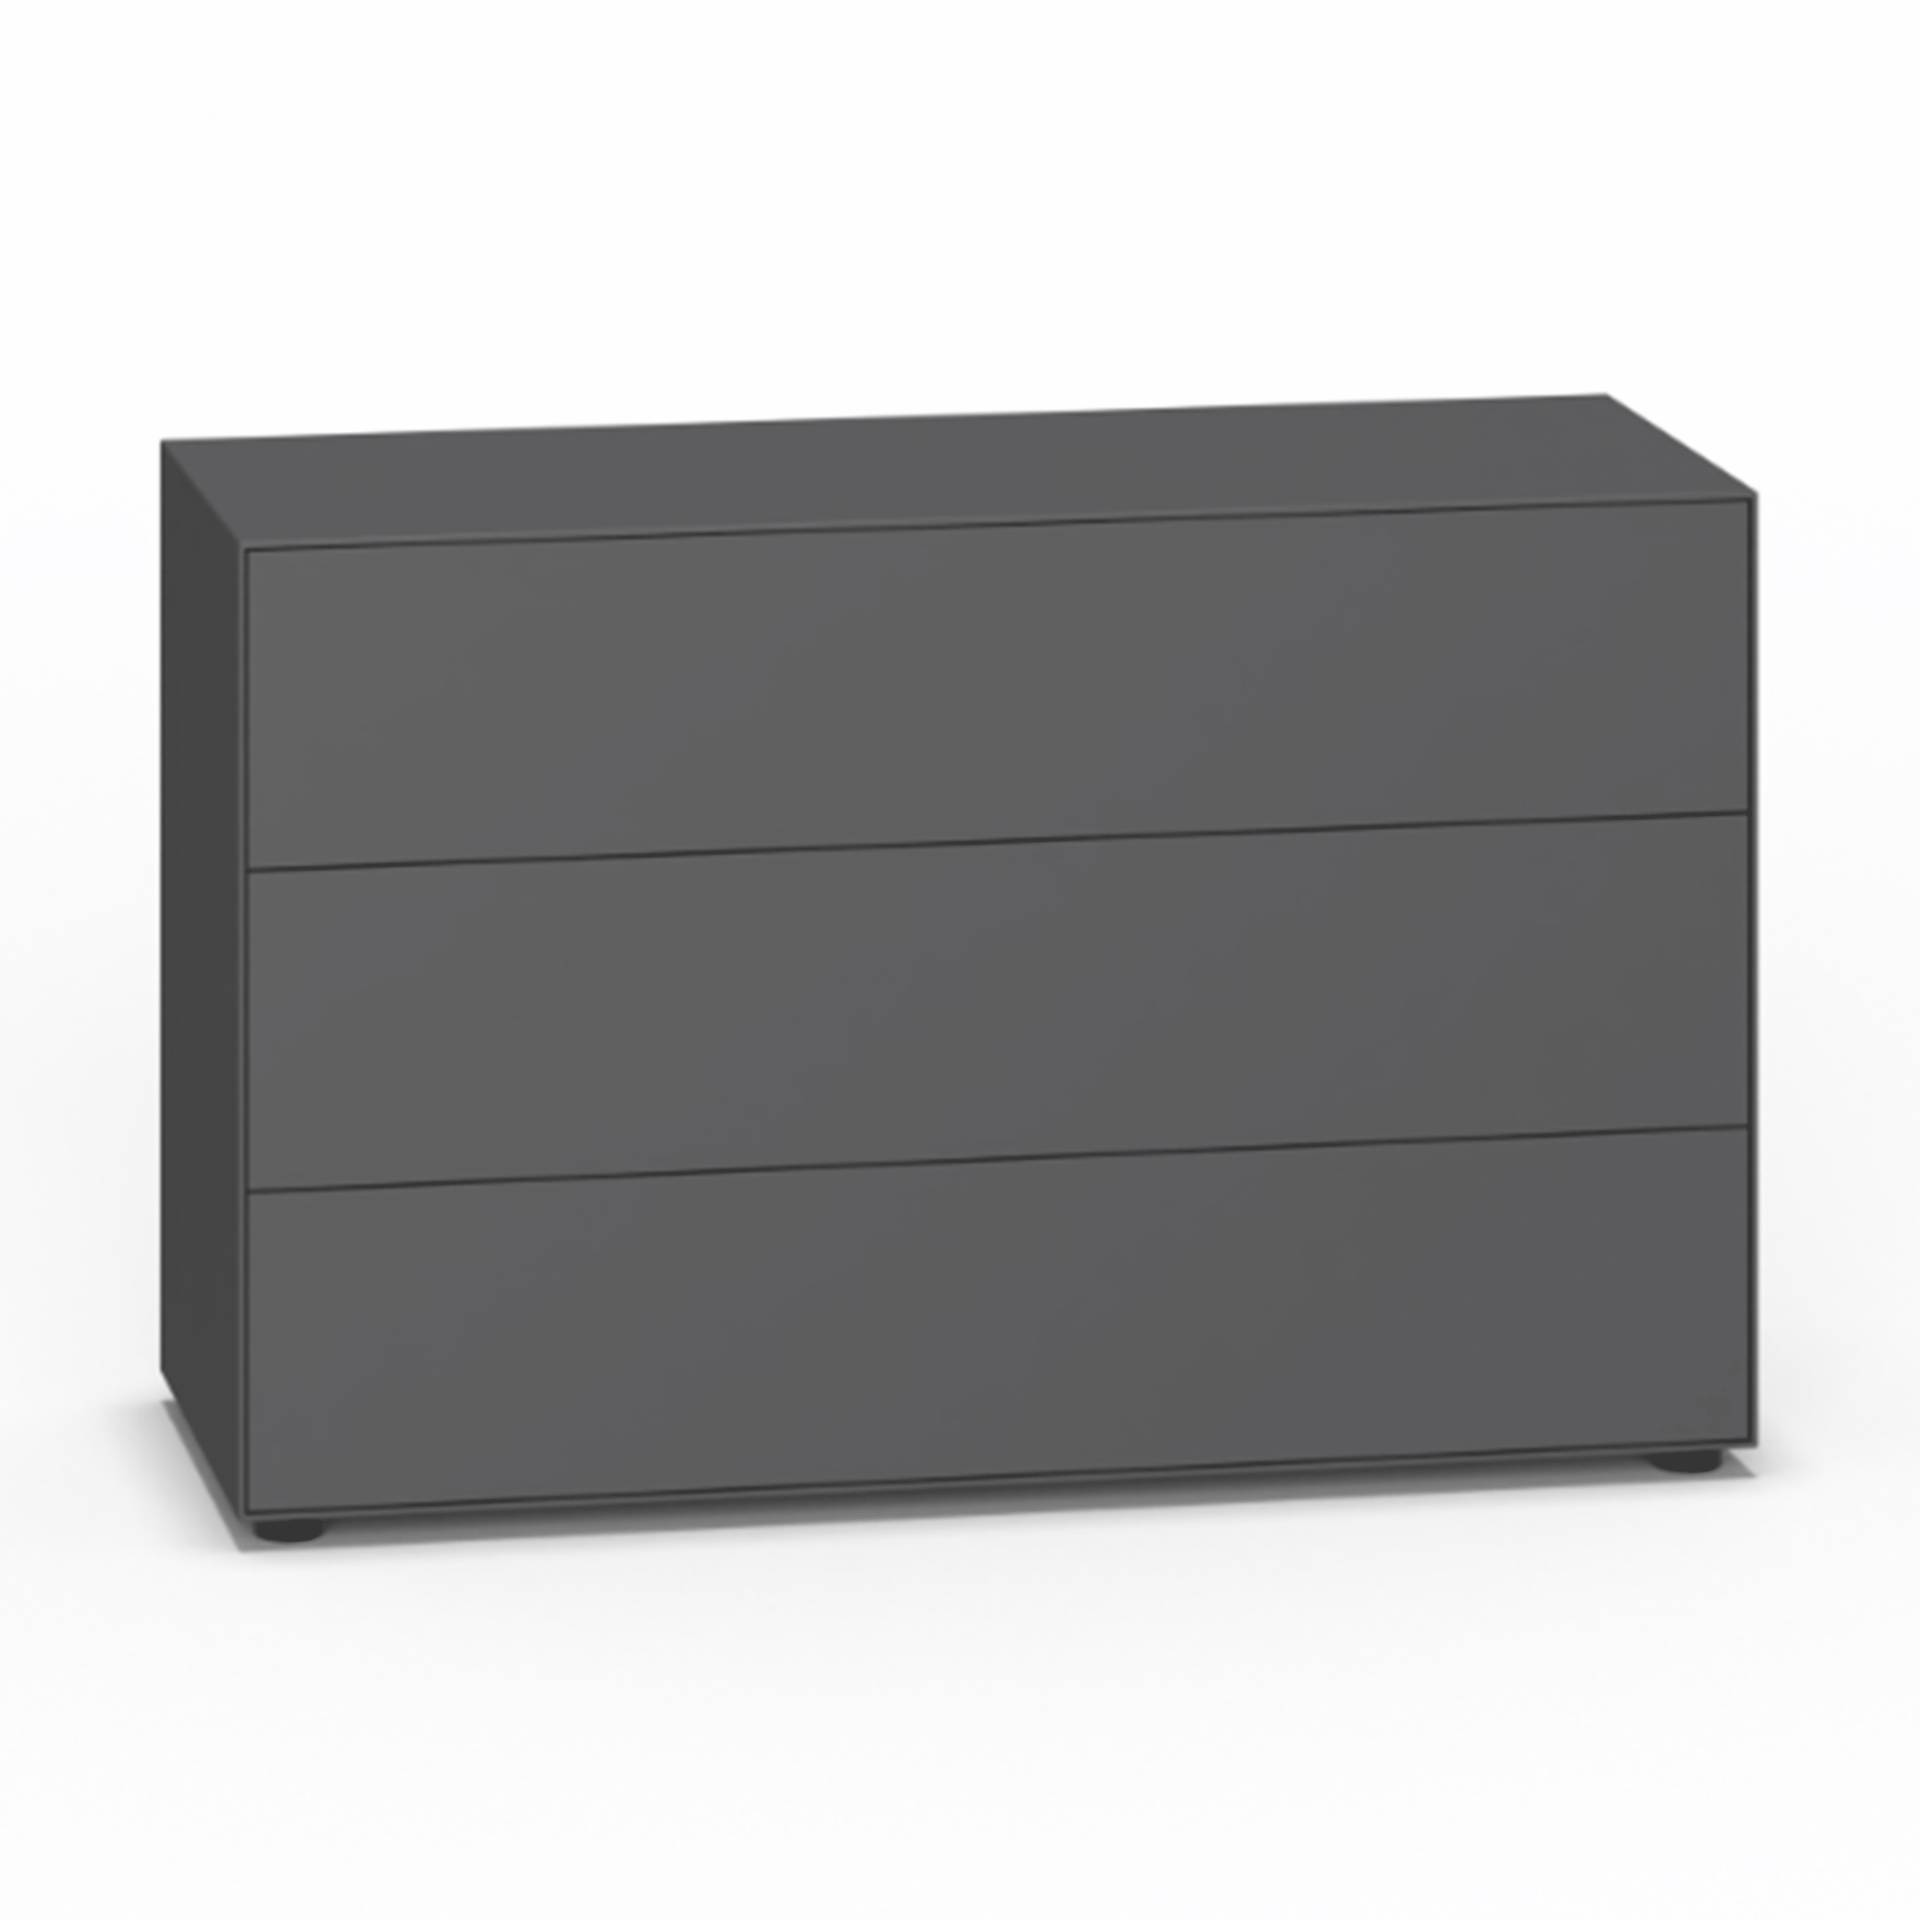 Piure - Nex Pur Box Schubkastenbox/Kommode 120x75cm - graphit/MDF matt lackiert/mit Gleitfüße/3 Schubladen von Piure